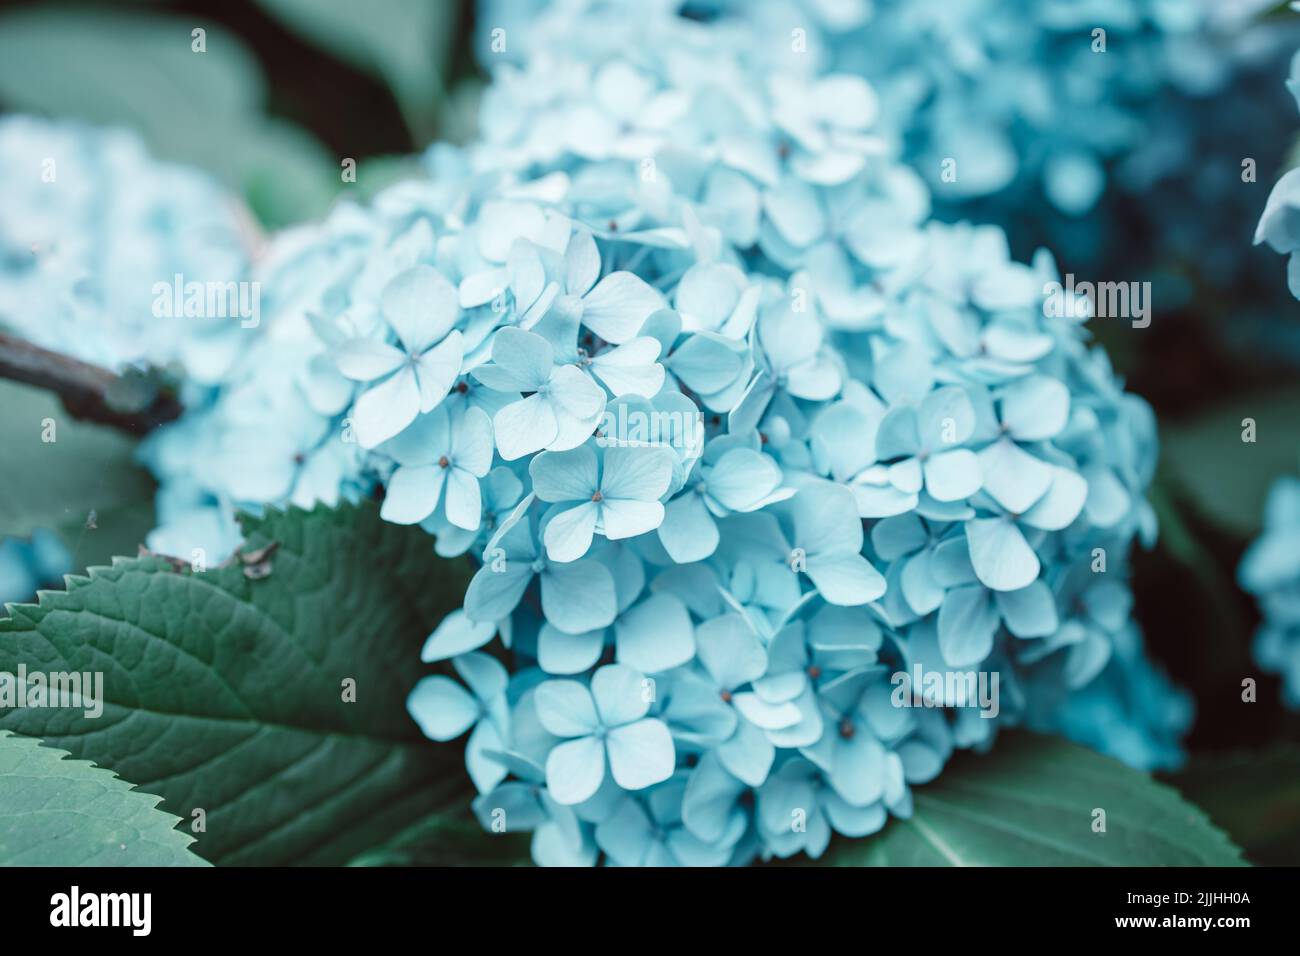 Macro foto di hydrangea fiore. Dettagli dei petali blu. Bella texture blu colorata di fiori. Ortangea Foto Stock